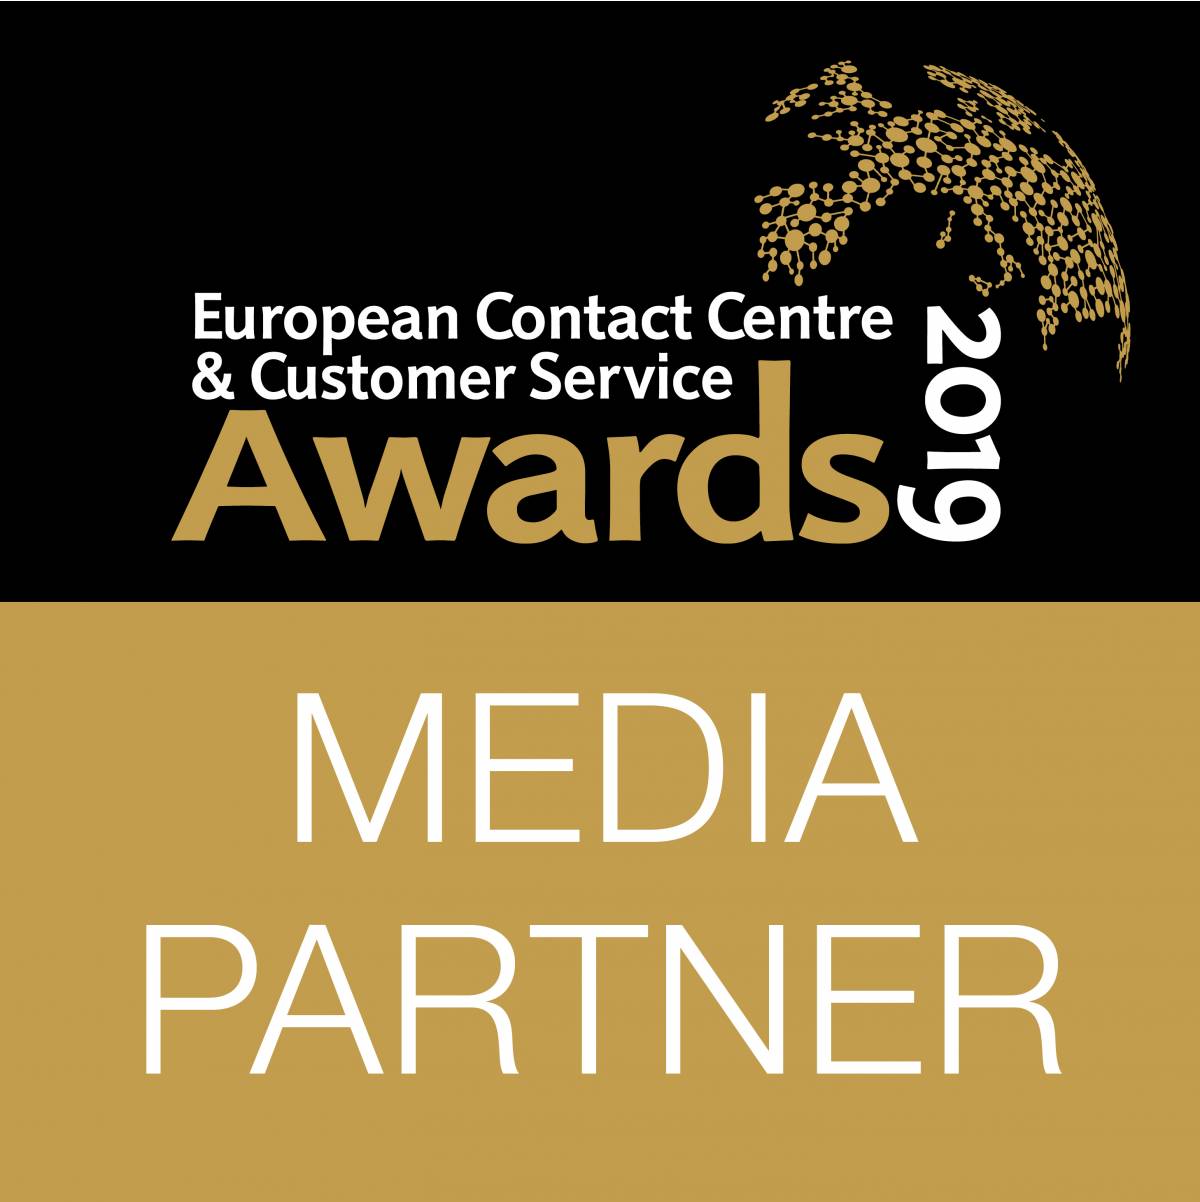 Стартовал новый сезон European Contact Centre and Customer Service Awards 2019. Заявки на участие принимаются до 12 июля 2019